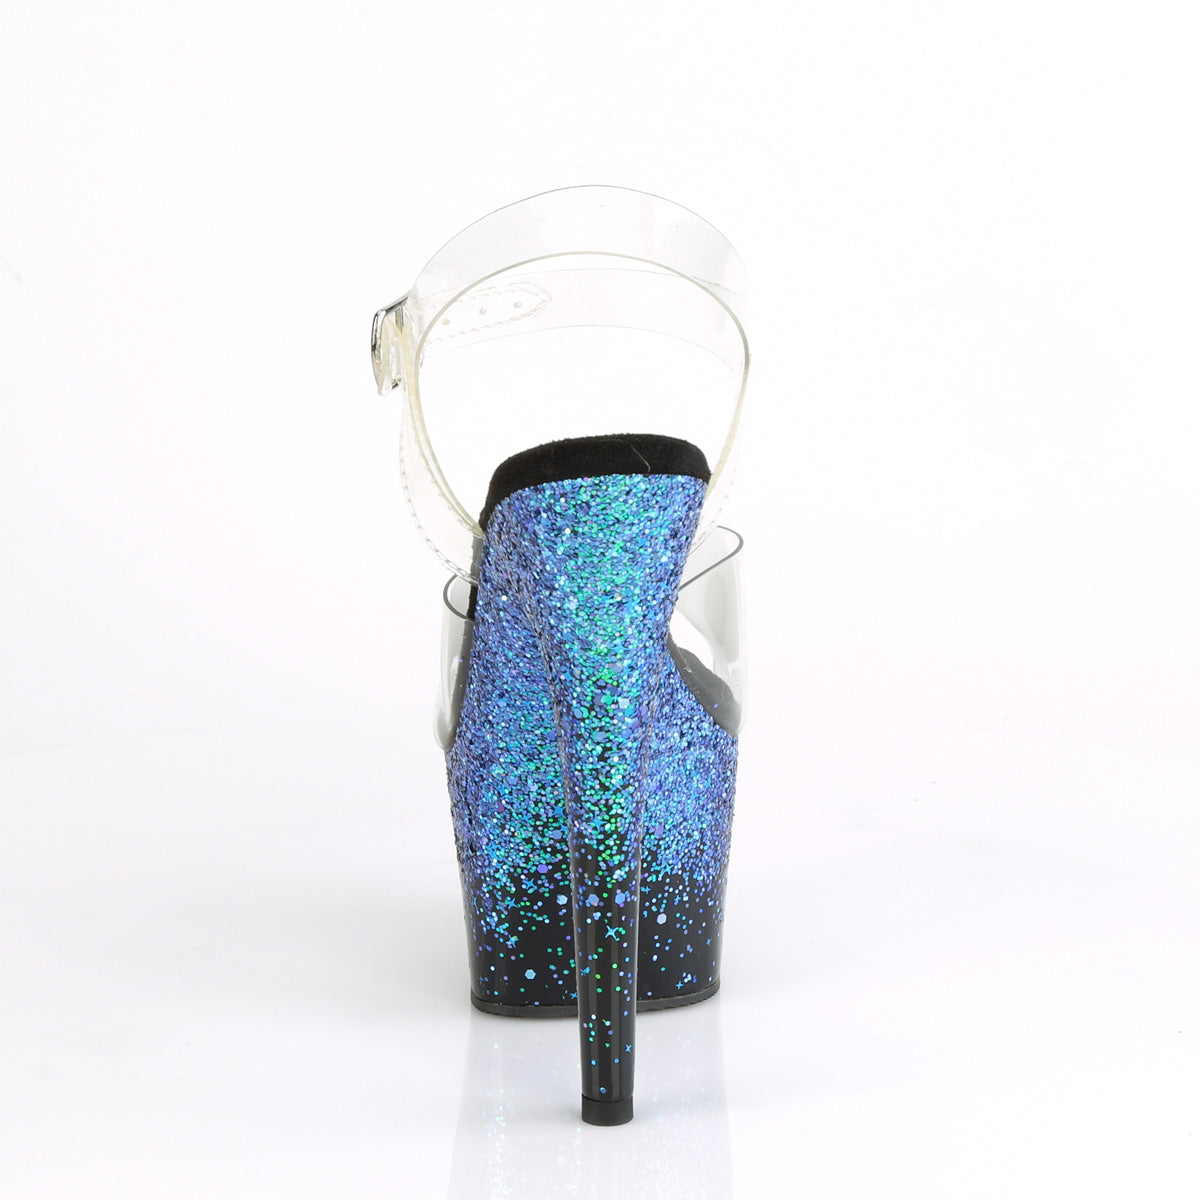 Pleaser Womens Sandals ADORE-708SS Clr/Blk-Blue Multi Glitter